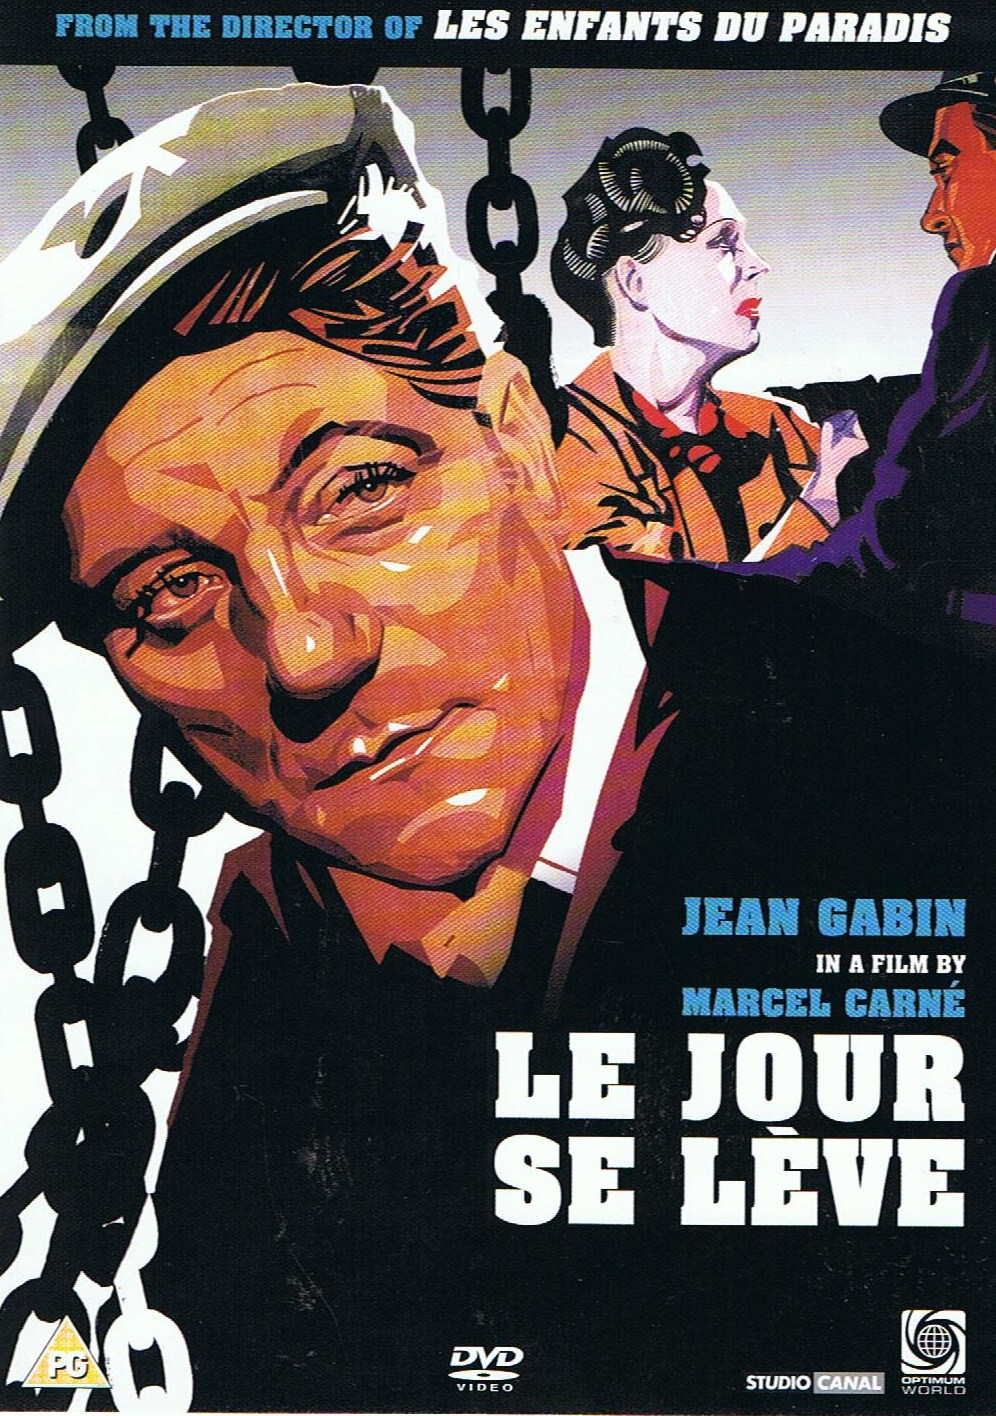 The Film Sufi: “Le Jour se Leve” - Marcel Carne (1939)